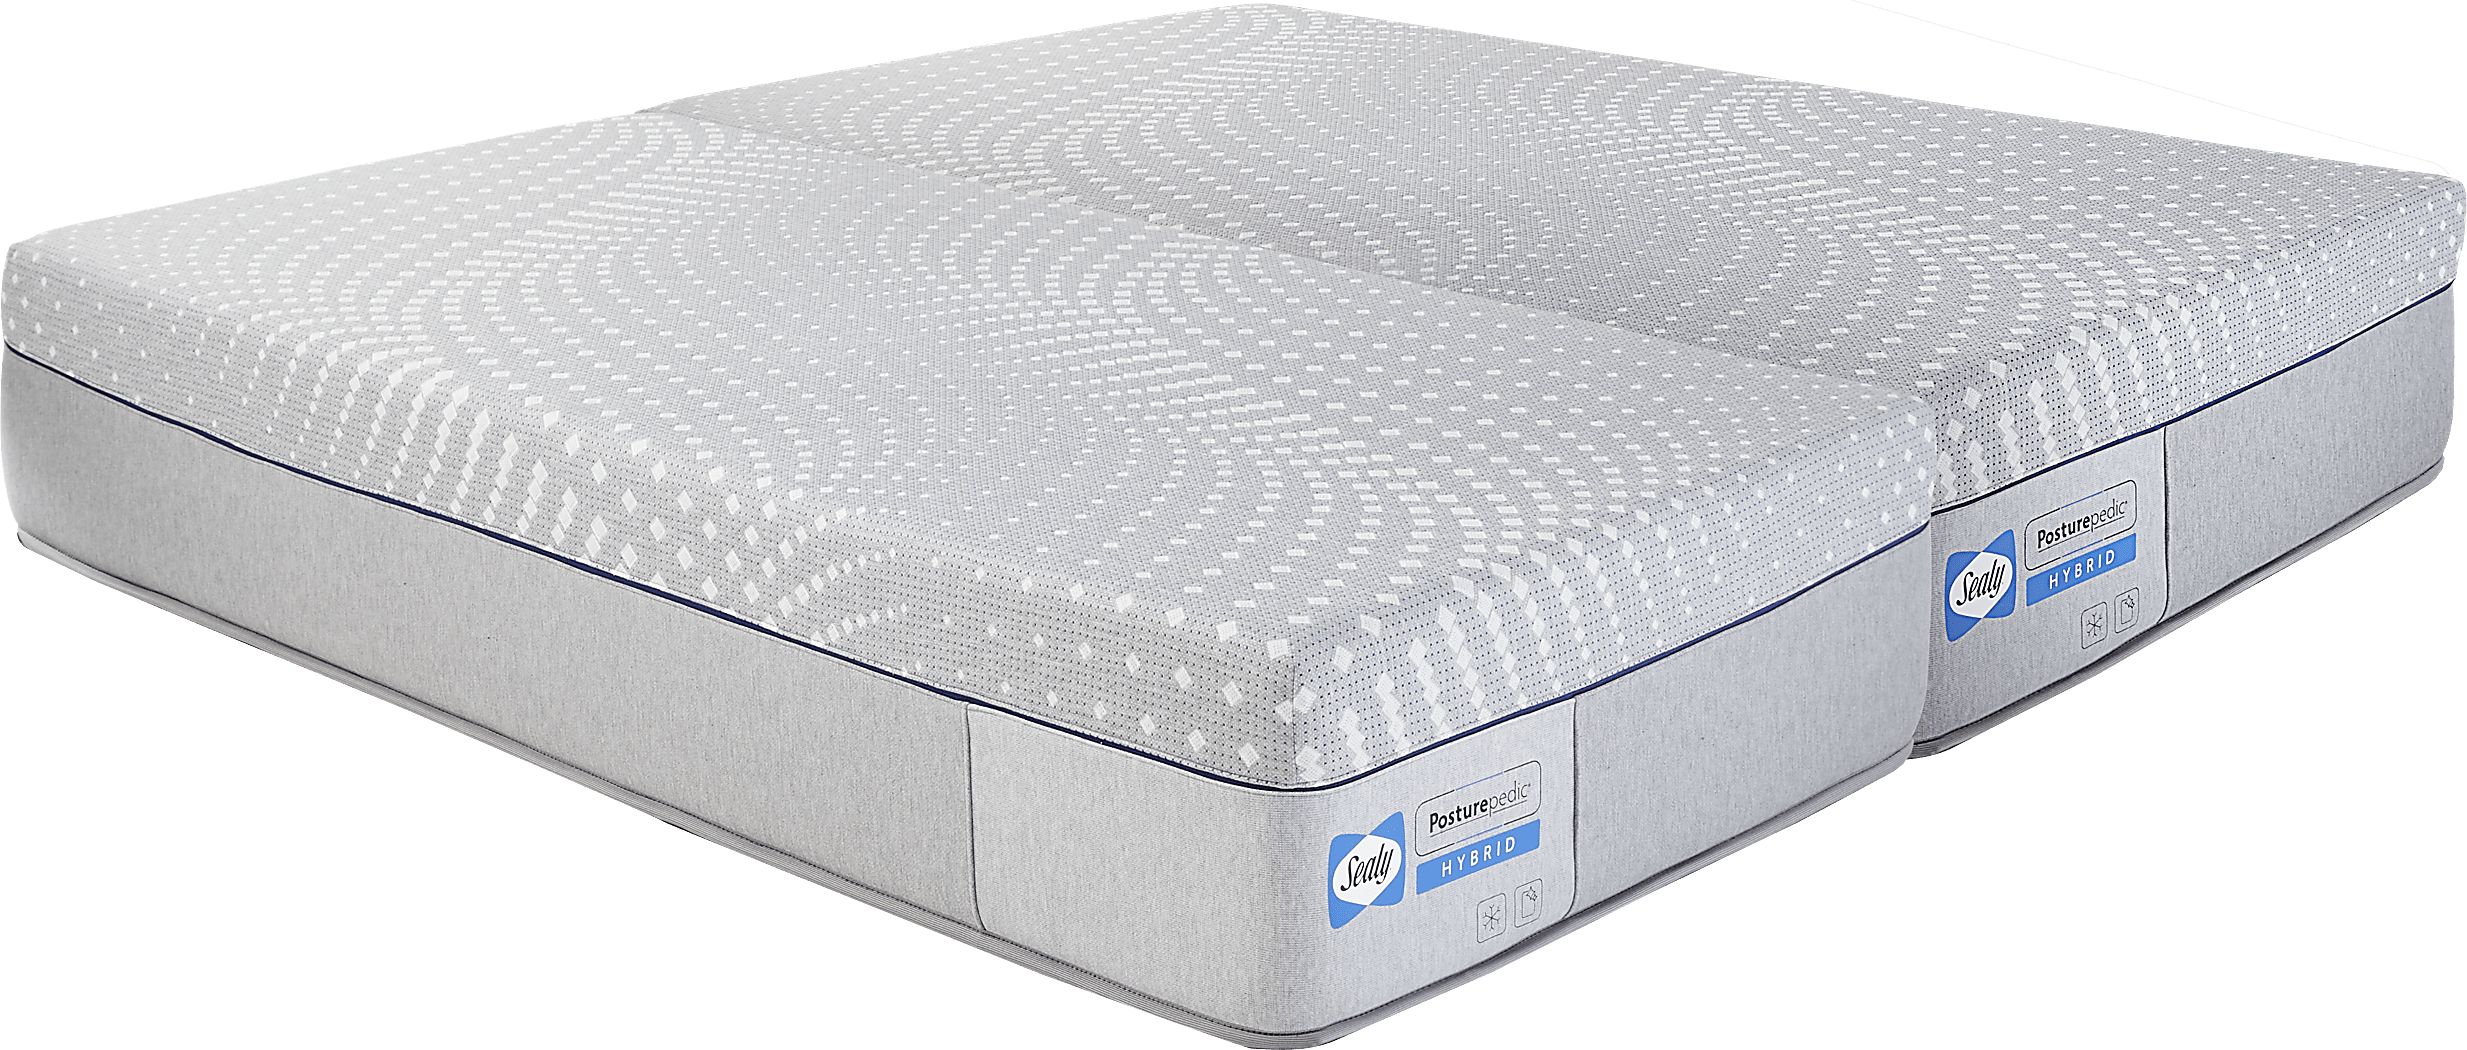 sealy cedar valley firm mattress reviews